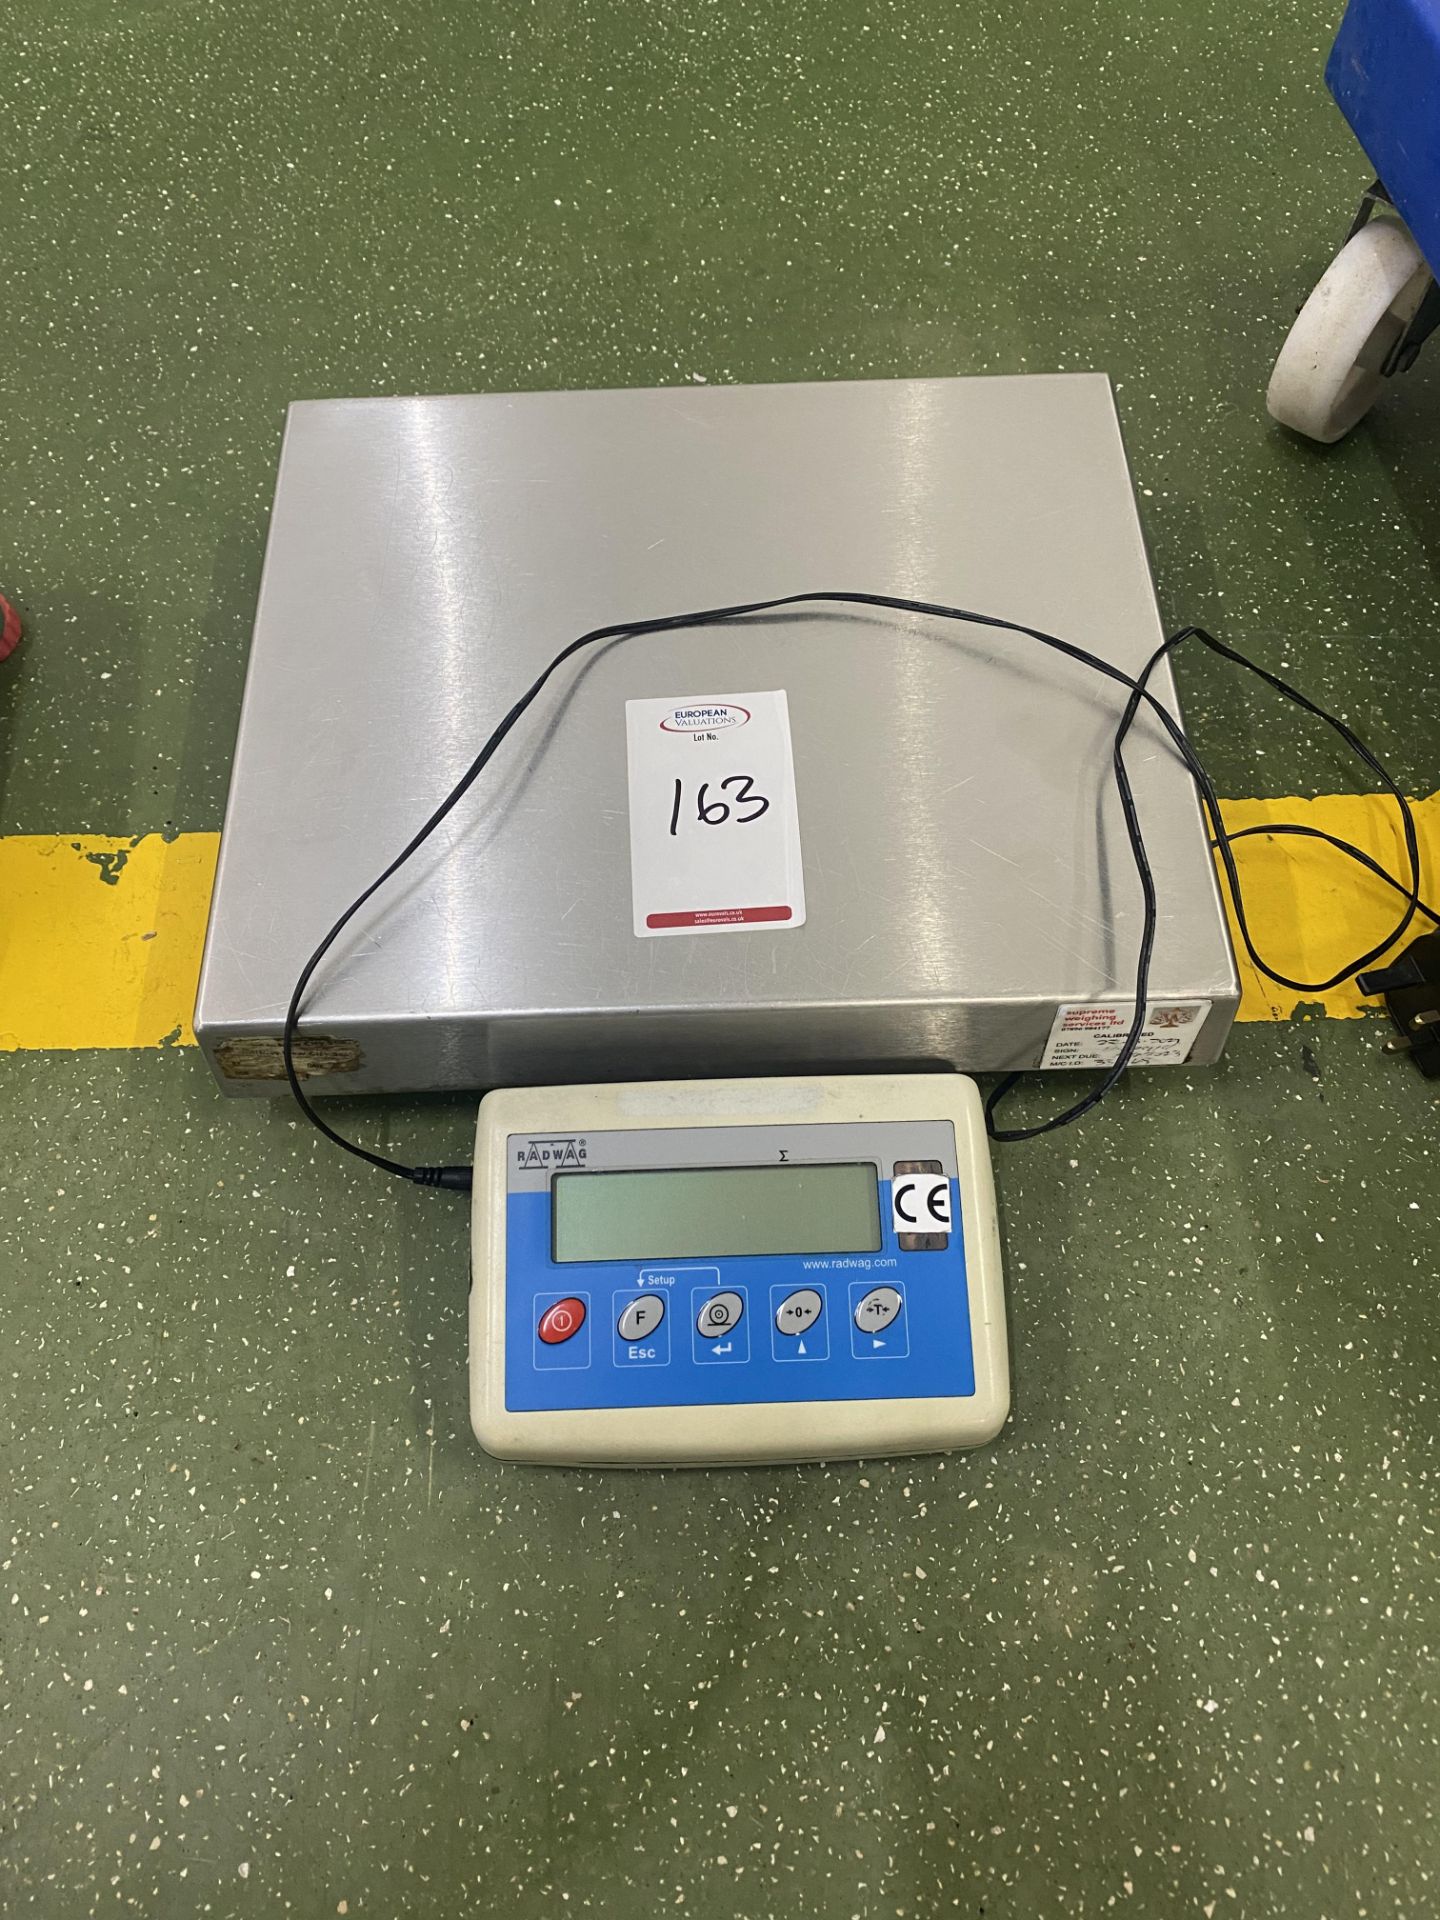 Radway digital weighing scales